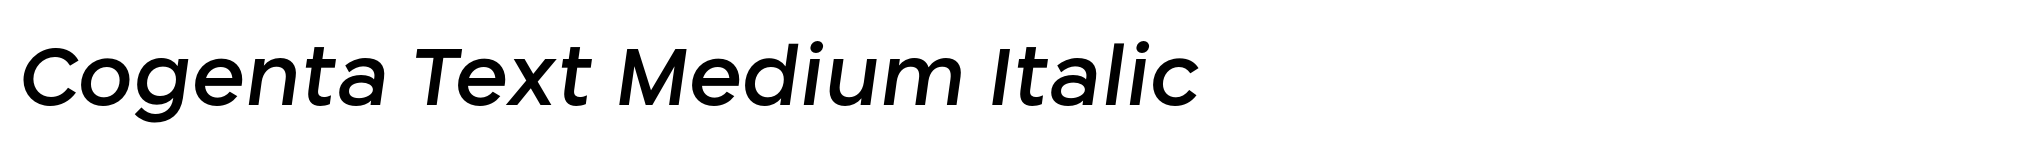 Cogenta Text Medium Italic image